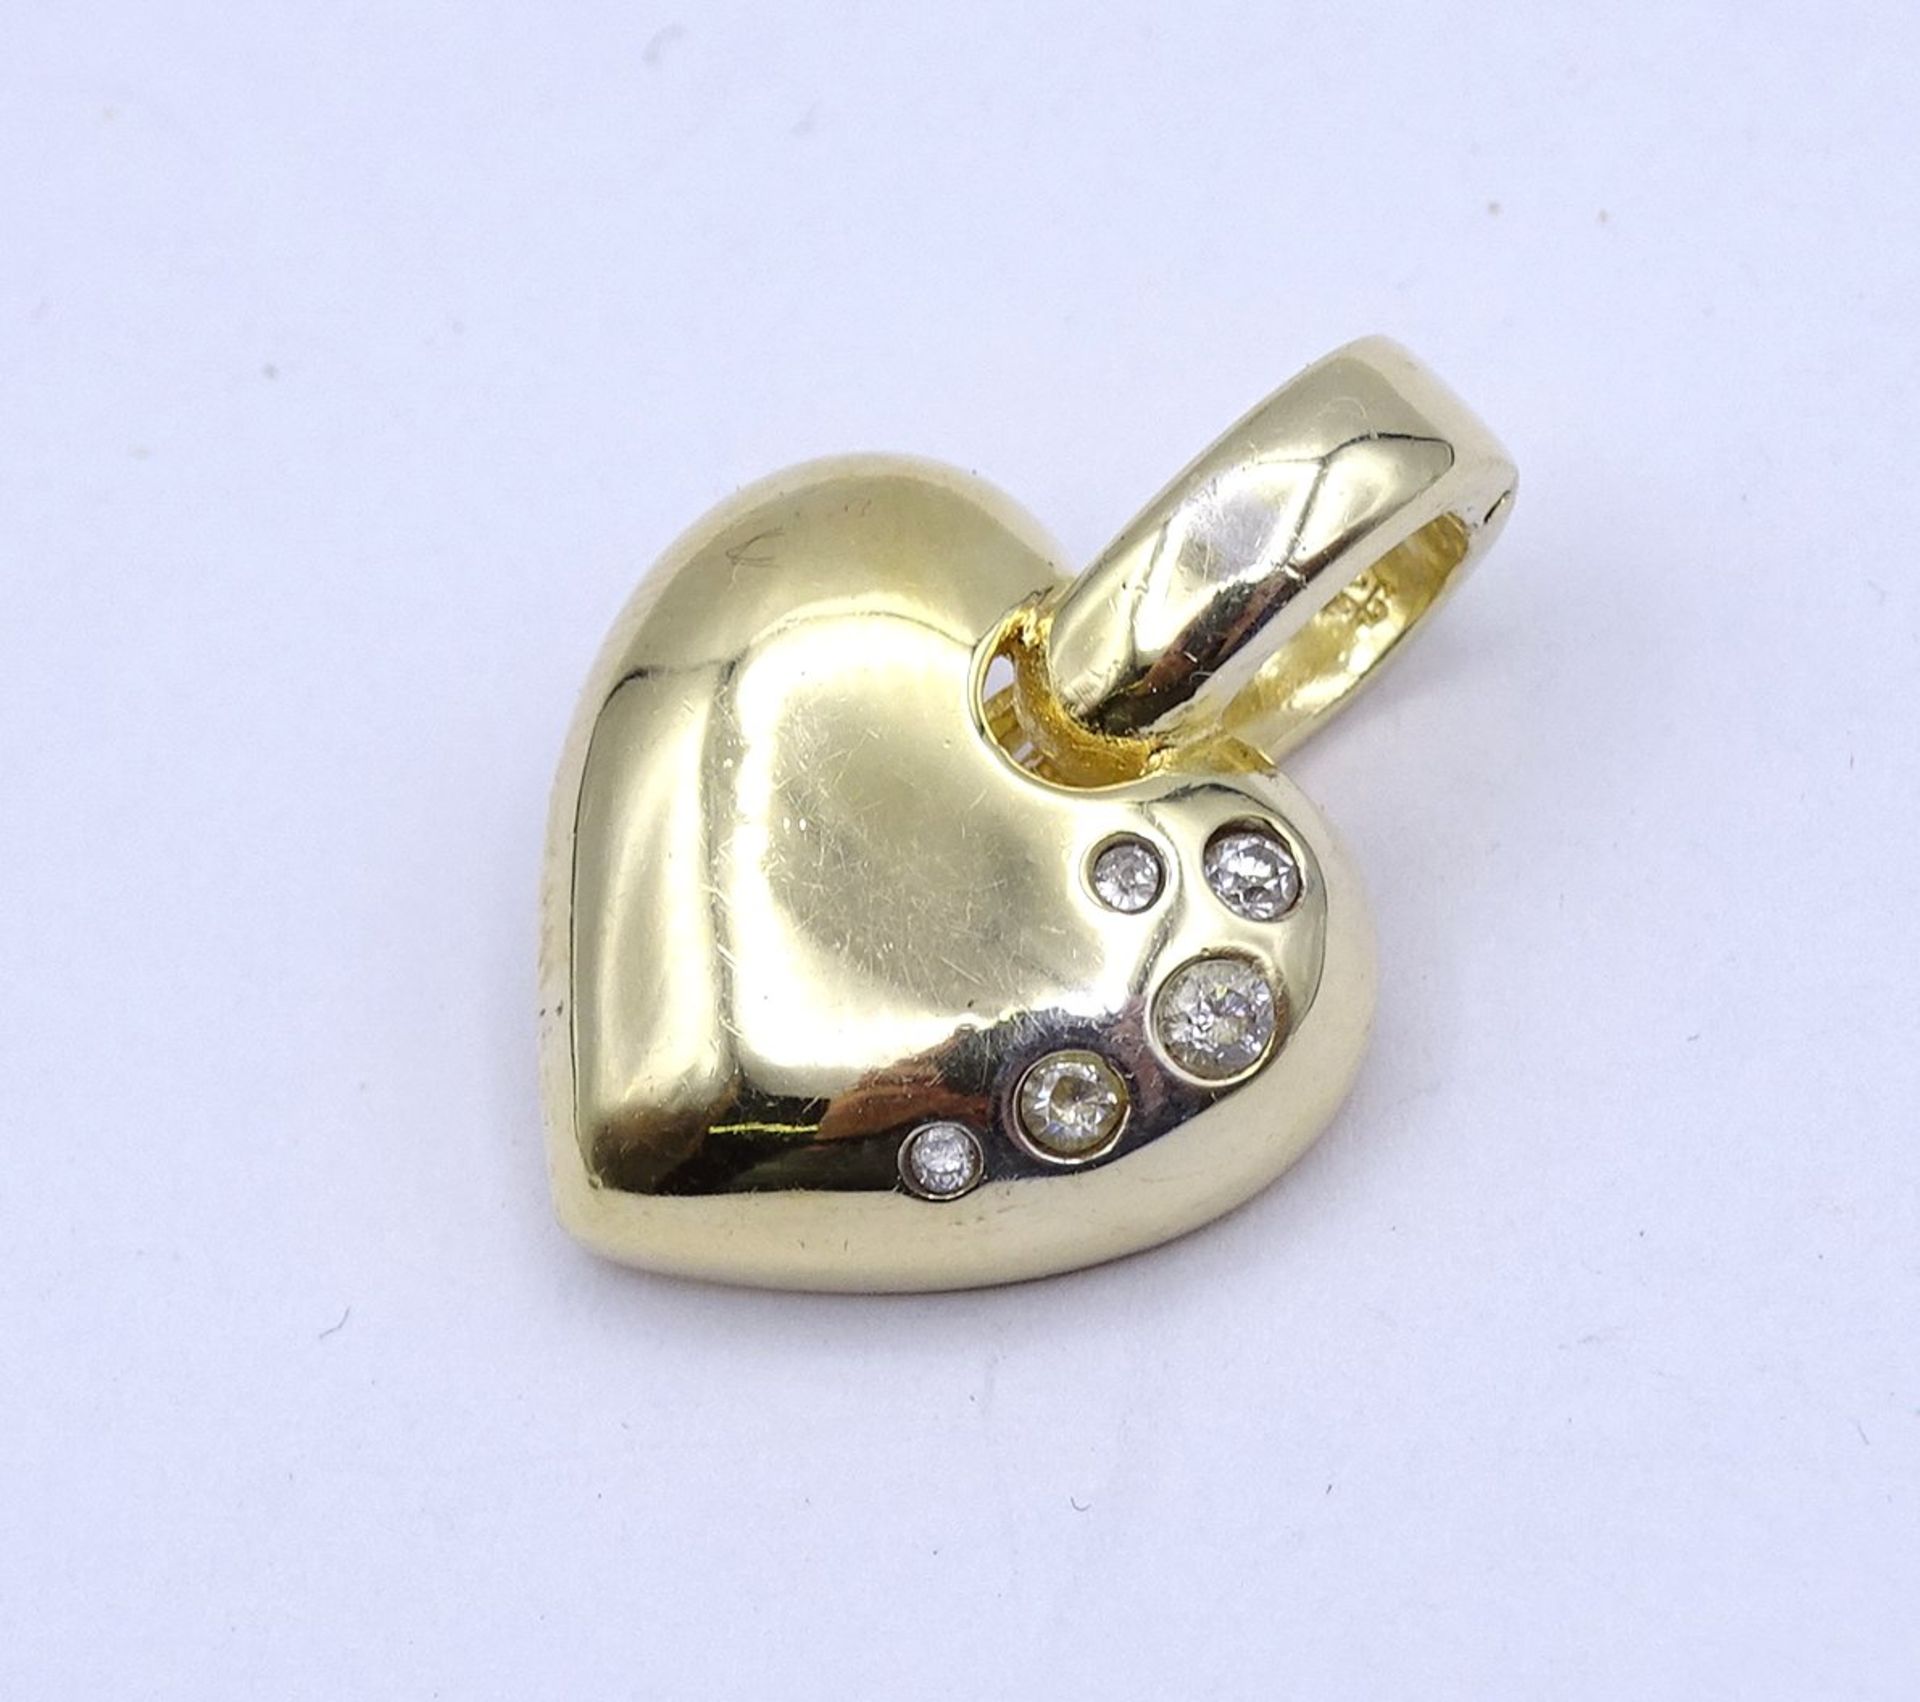 Herzförmiger Anhänger mit klaren Steinen, Silber 925 - vergoldet, 6,5g., 2,7x2,0cm, etwas berieben - Image 2 of 3